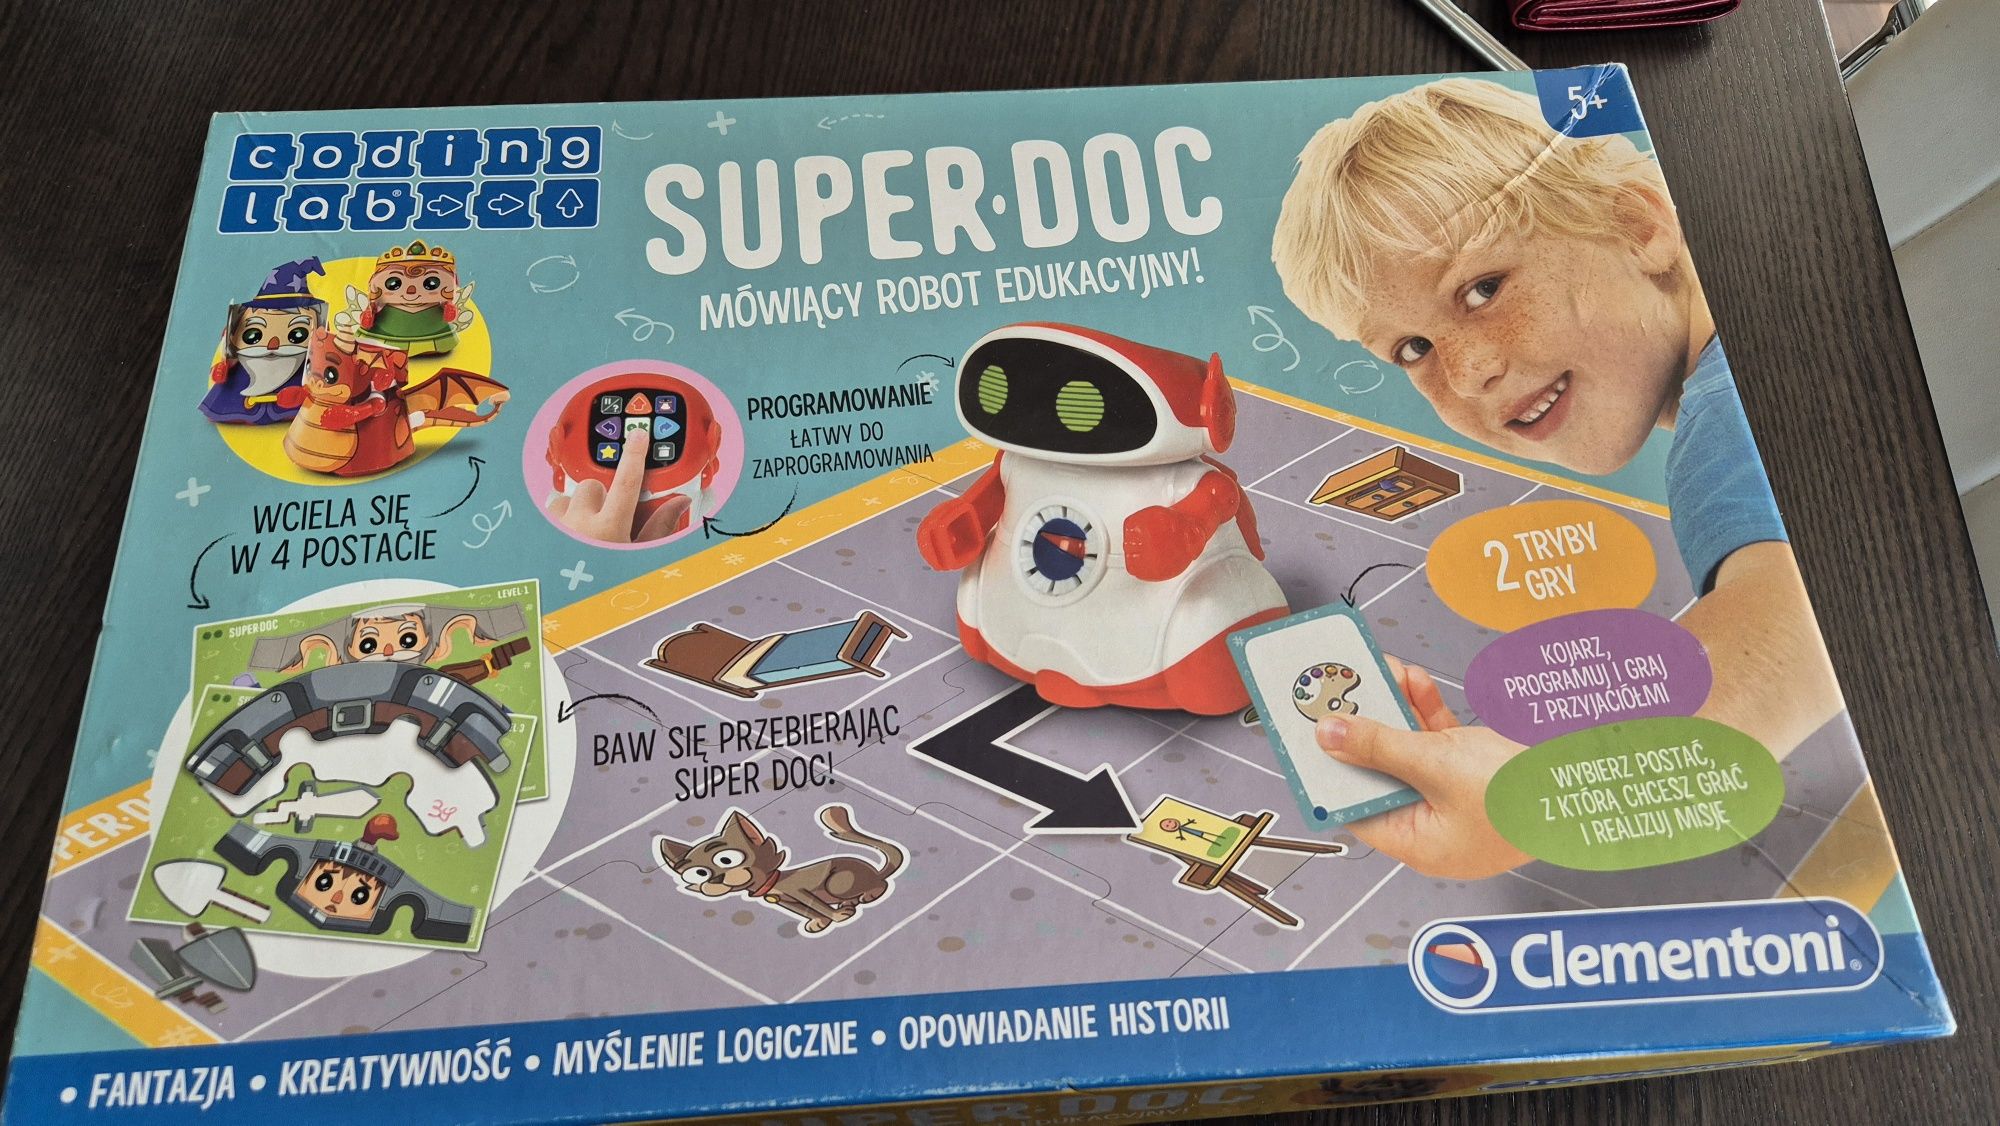 SUPER DOC - mówiący jeżdżący robot